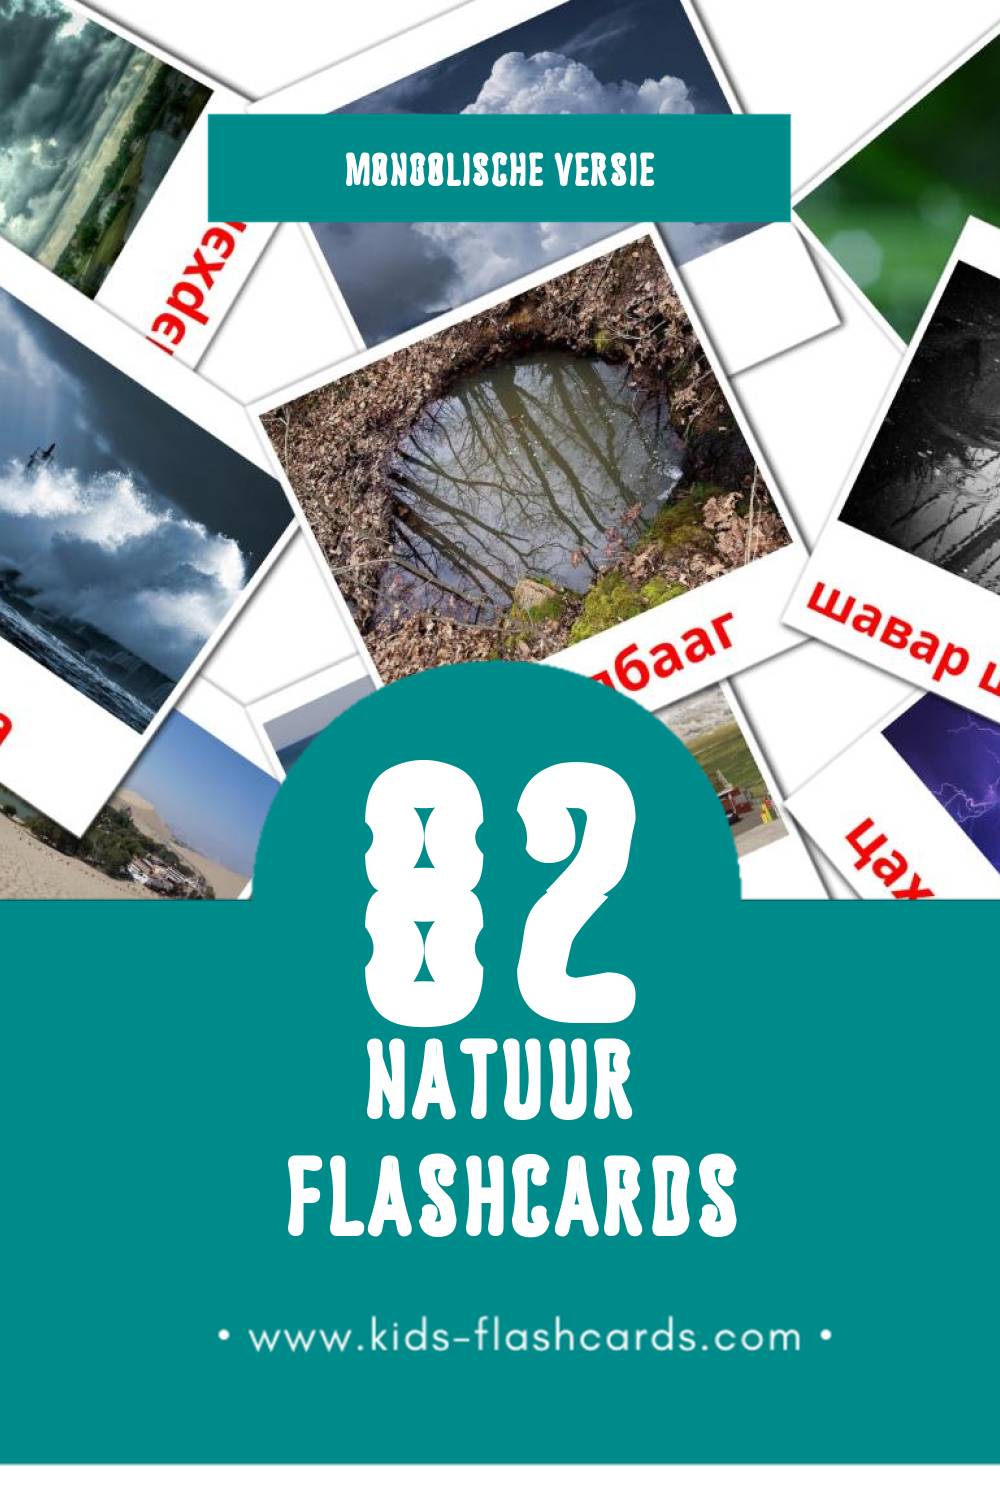 Visuele Байгаль Flashcards voor Kleuters (82 kaarten in het Mongolisch)